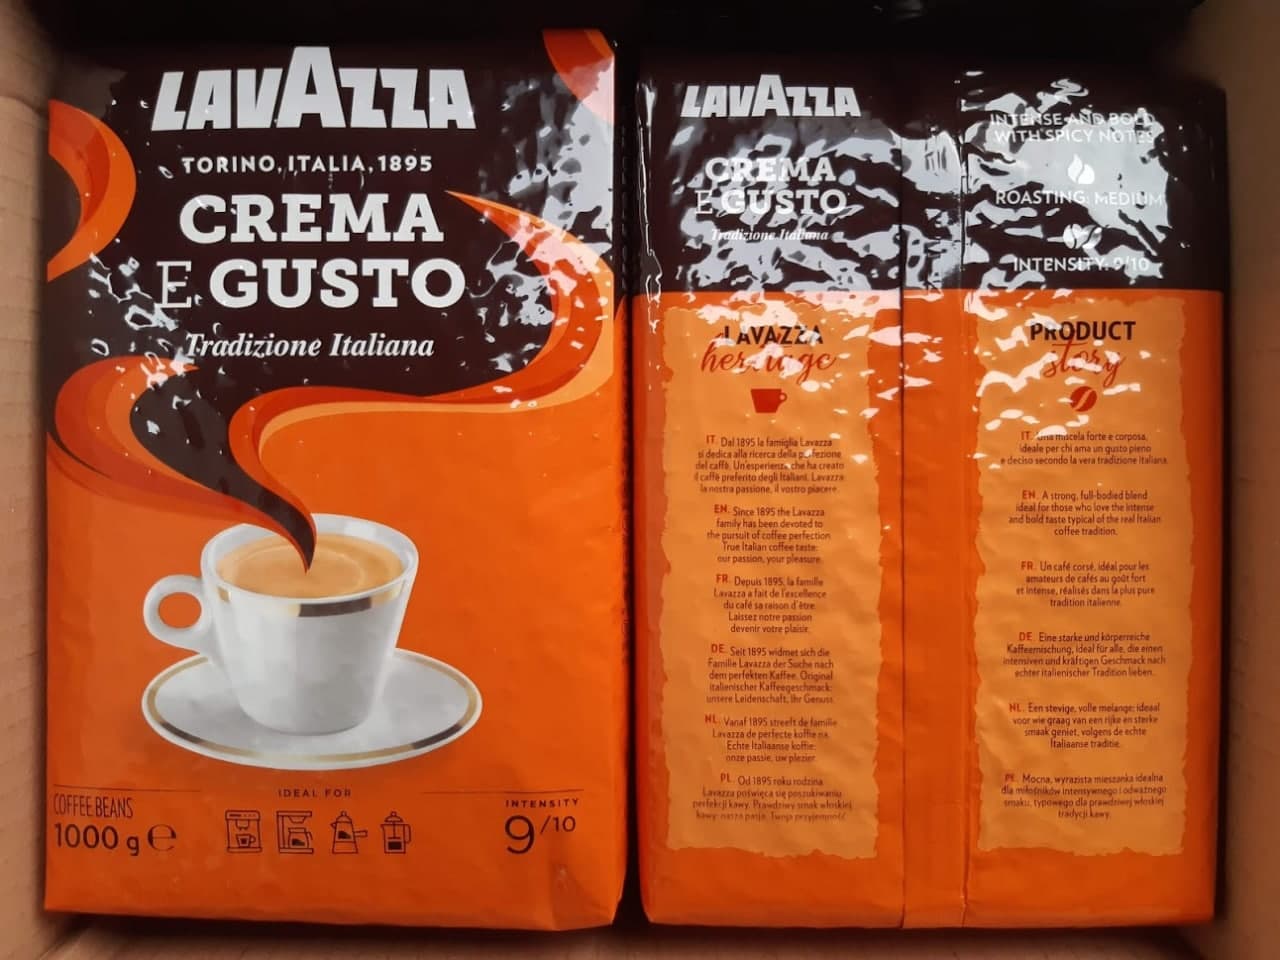 Pupiņu kafija "LAVAZZA" Crema e Gusto Tradizione Italiana